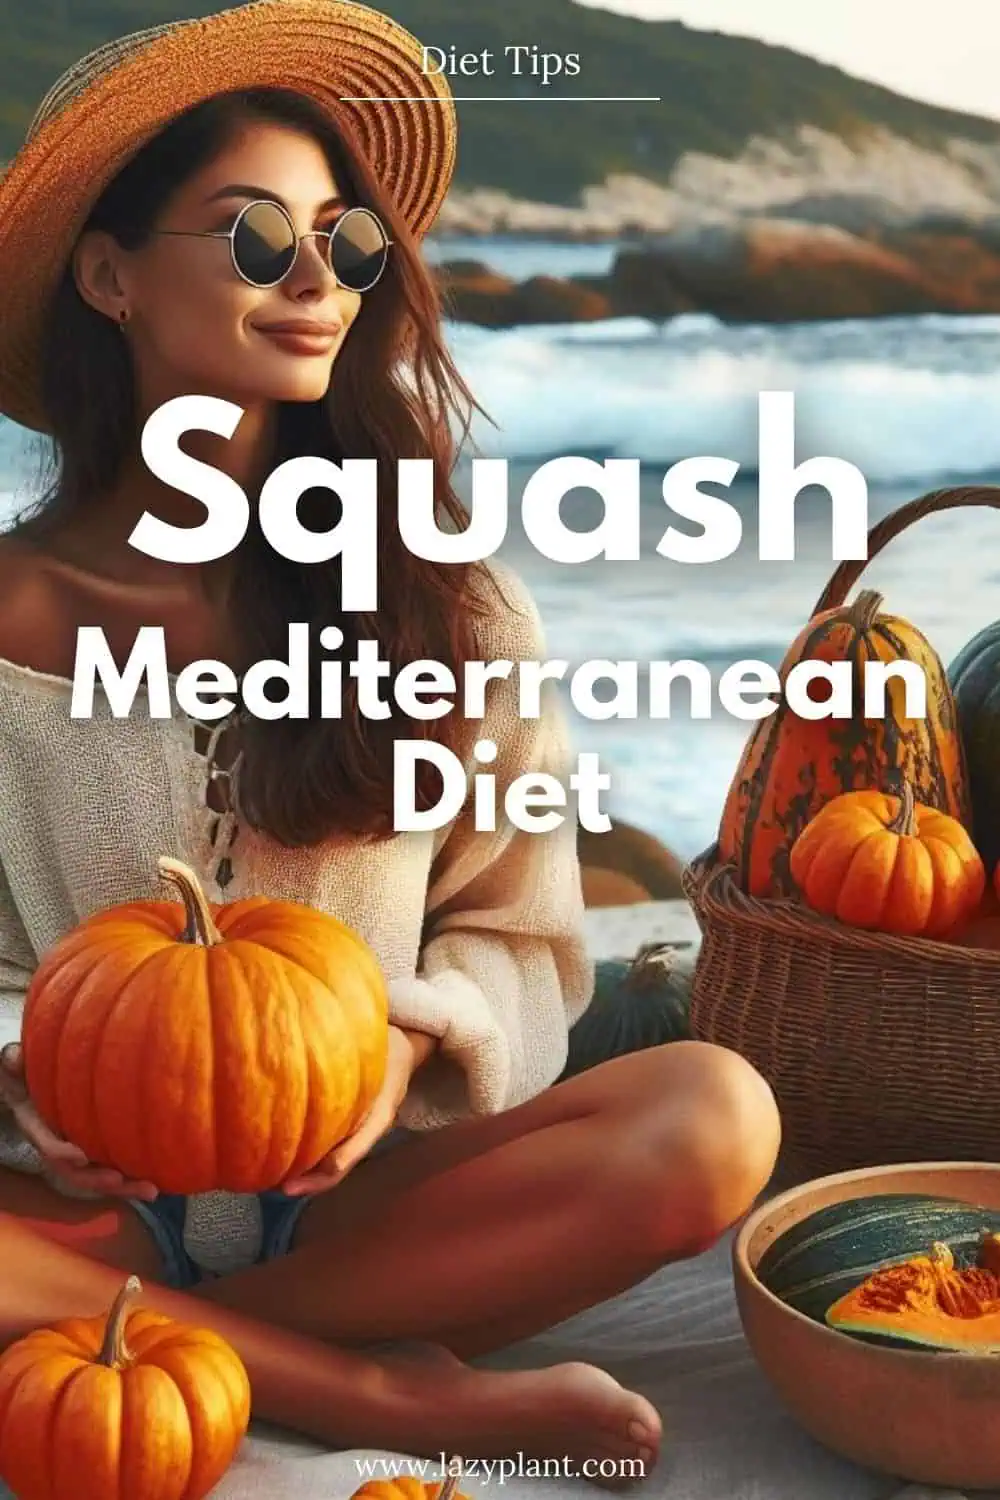 Eat Squash while following the Mediterranean Diet